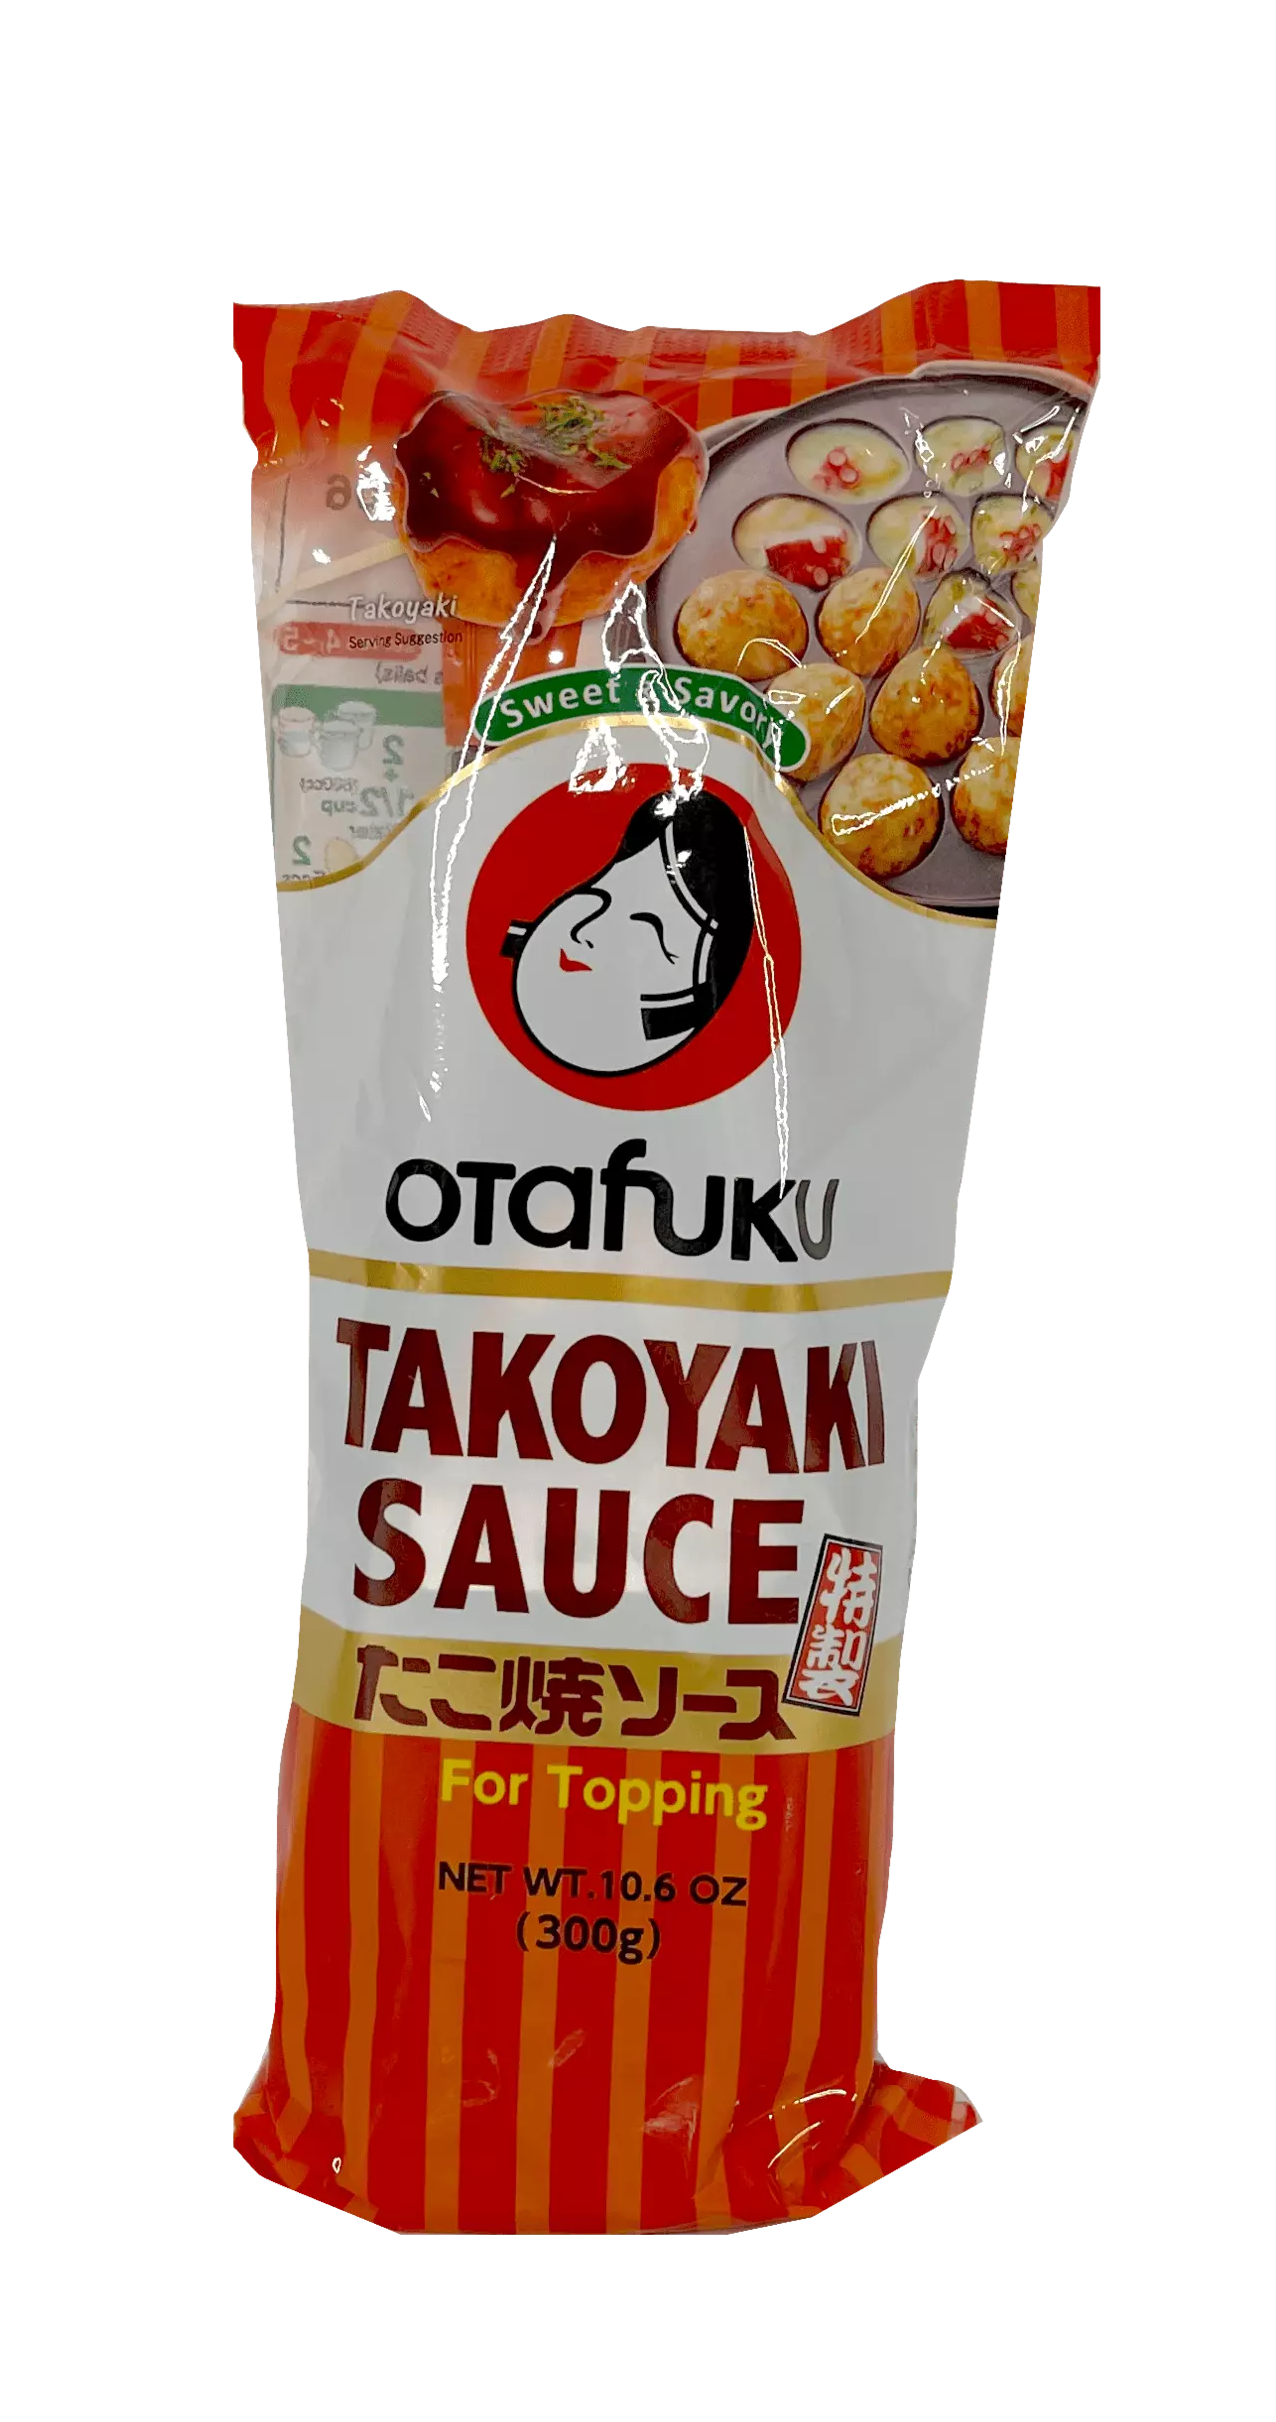 Takoyaki Sås 300g Otafuku Japan